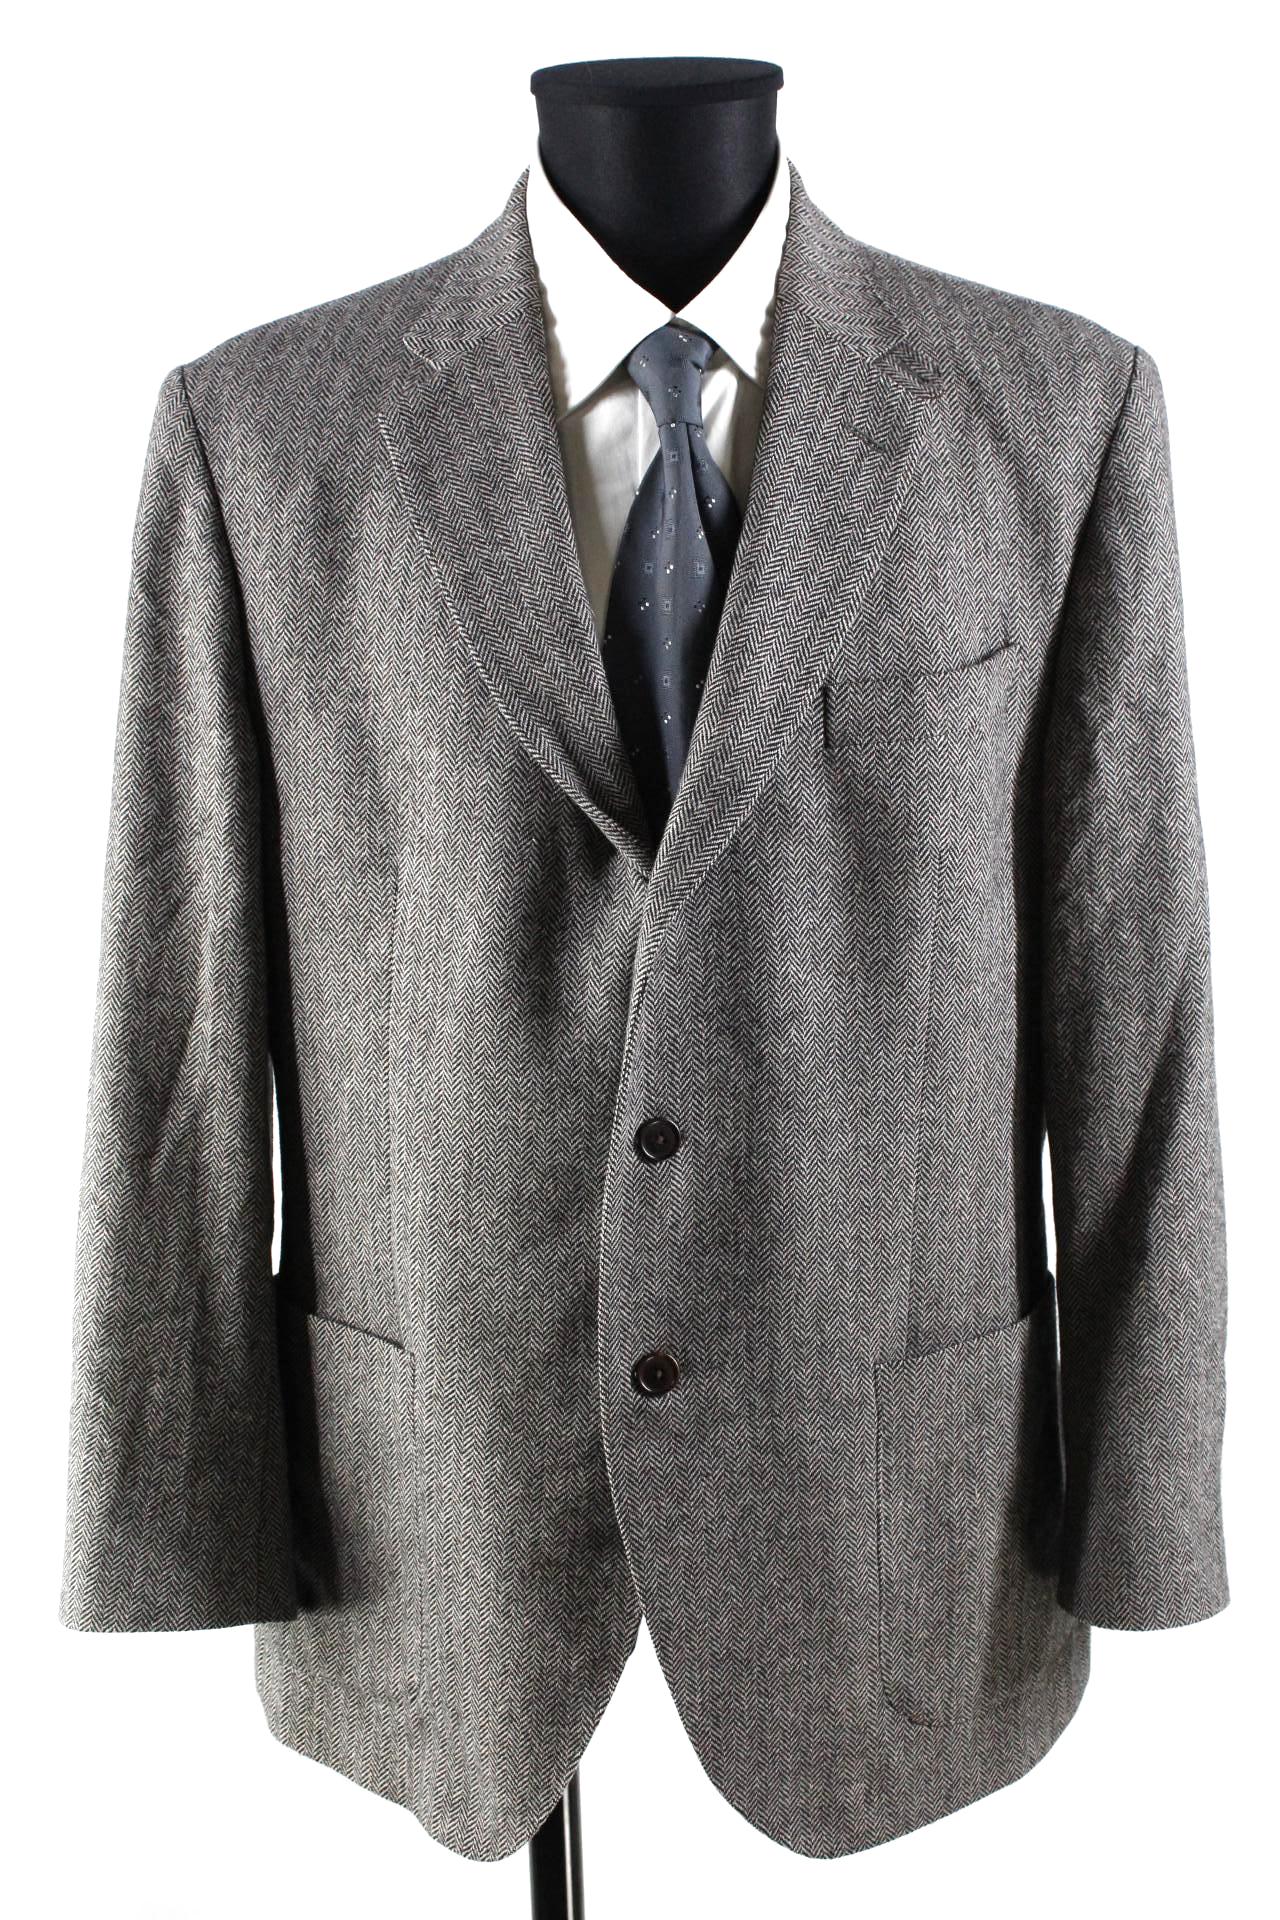 Hackett London Tweed-Sakko braun/schwarz Größe 44R